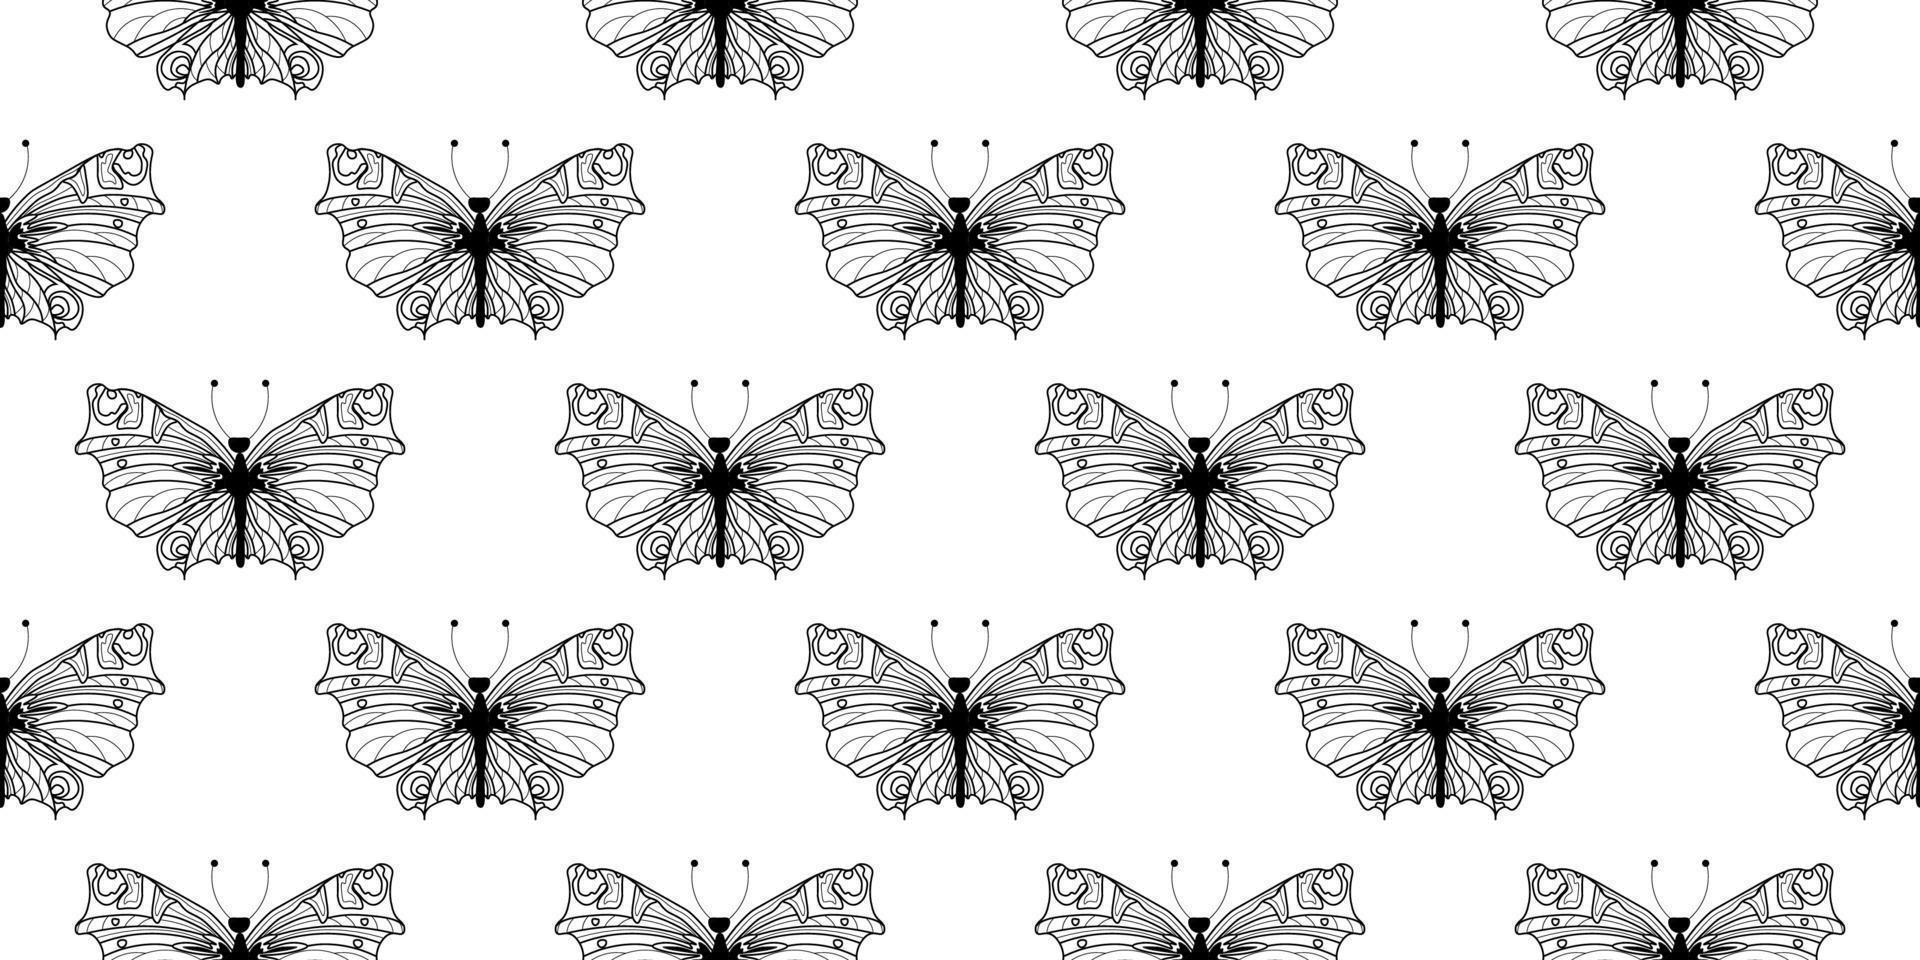 estilo de mariposa moderno abstracto para el diseño de papel tapiz. banner japonés de moda con estilo de mariposa negro moderno. vector